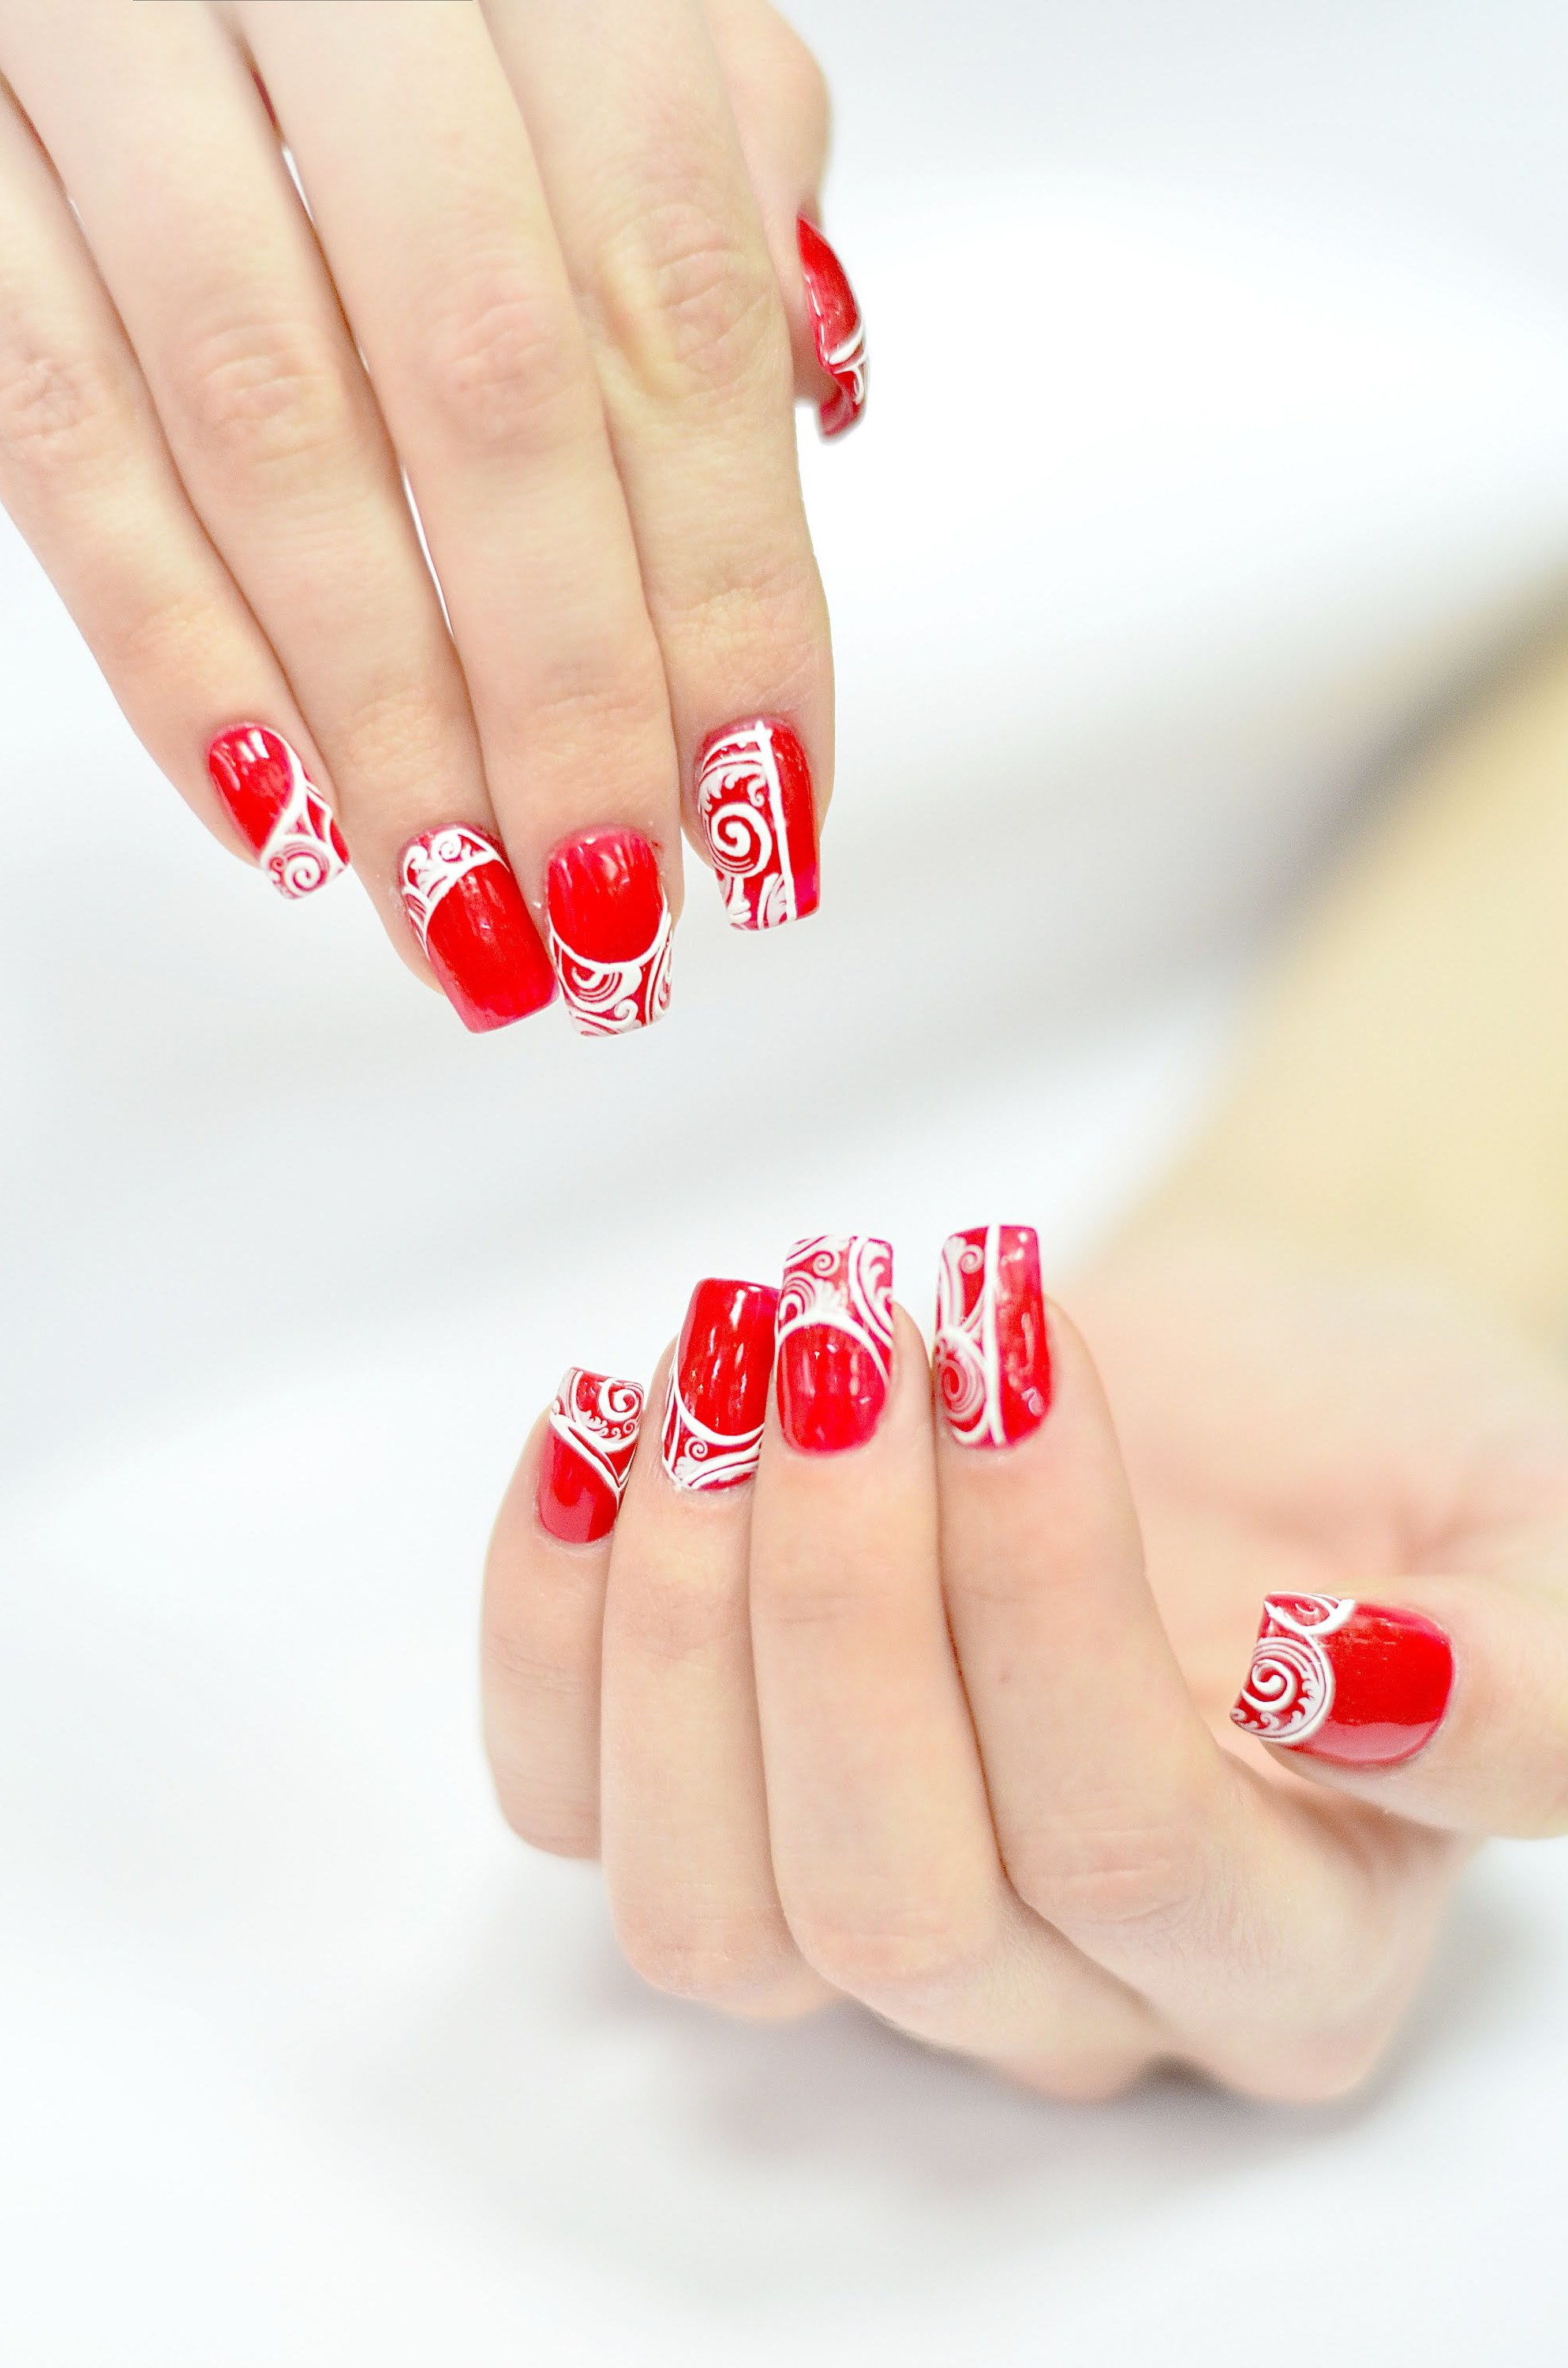 Måla naglar i rött - en klassiker på manikyr